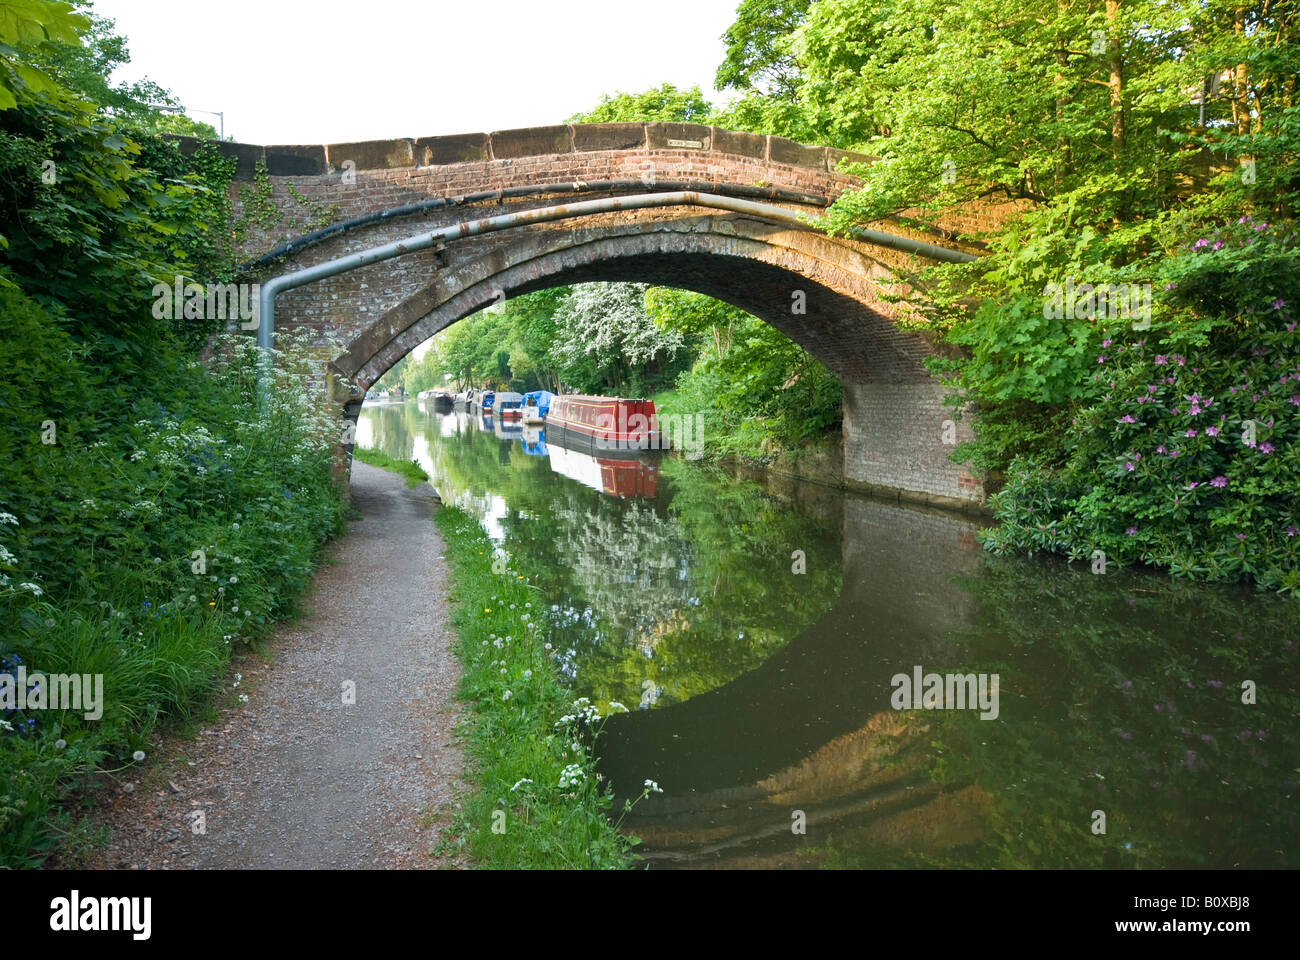 Buckel hintere Brücke über den Bridgewater Kanal in Moore in der Nähe von Daresbury, Warrington, Cheshire. Schmale Boote sind sehr häufig auf diesem Kanal Stockfoto